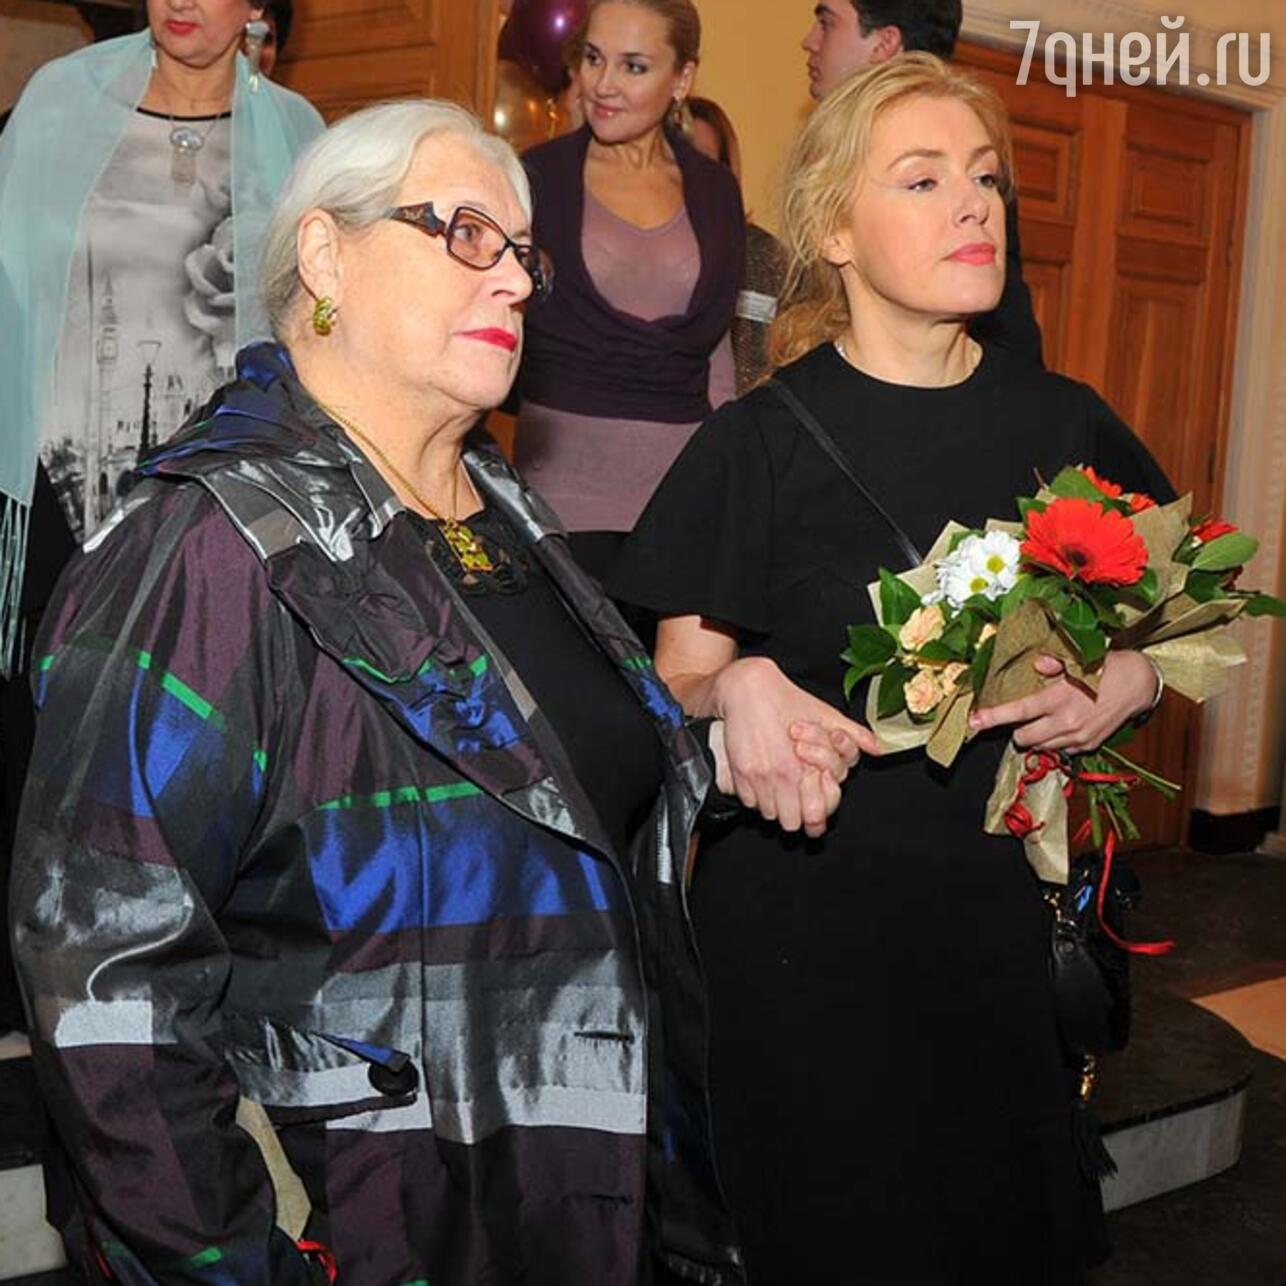 Лидия Федосеева-Шукшина и Мария Шукшина вместе фото